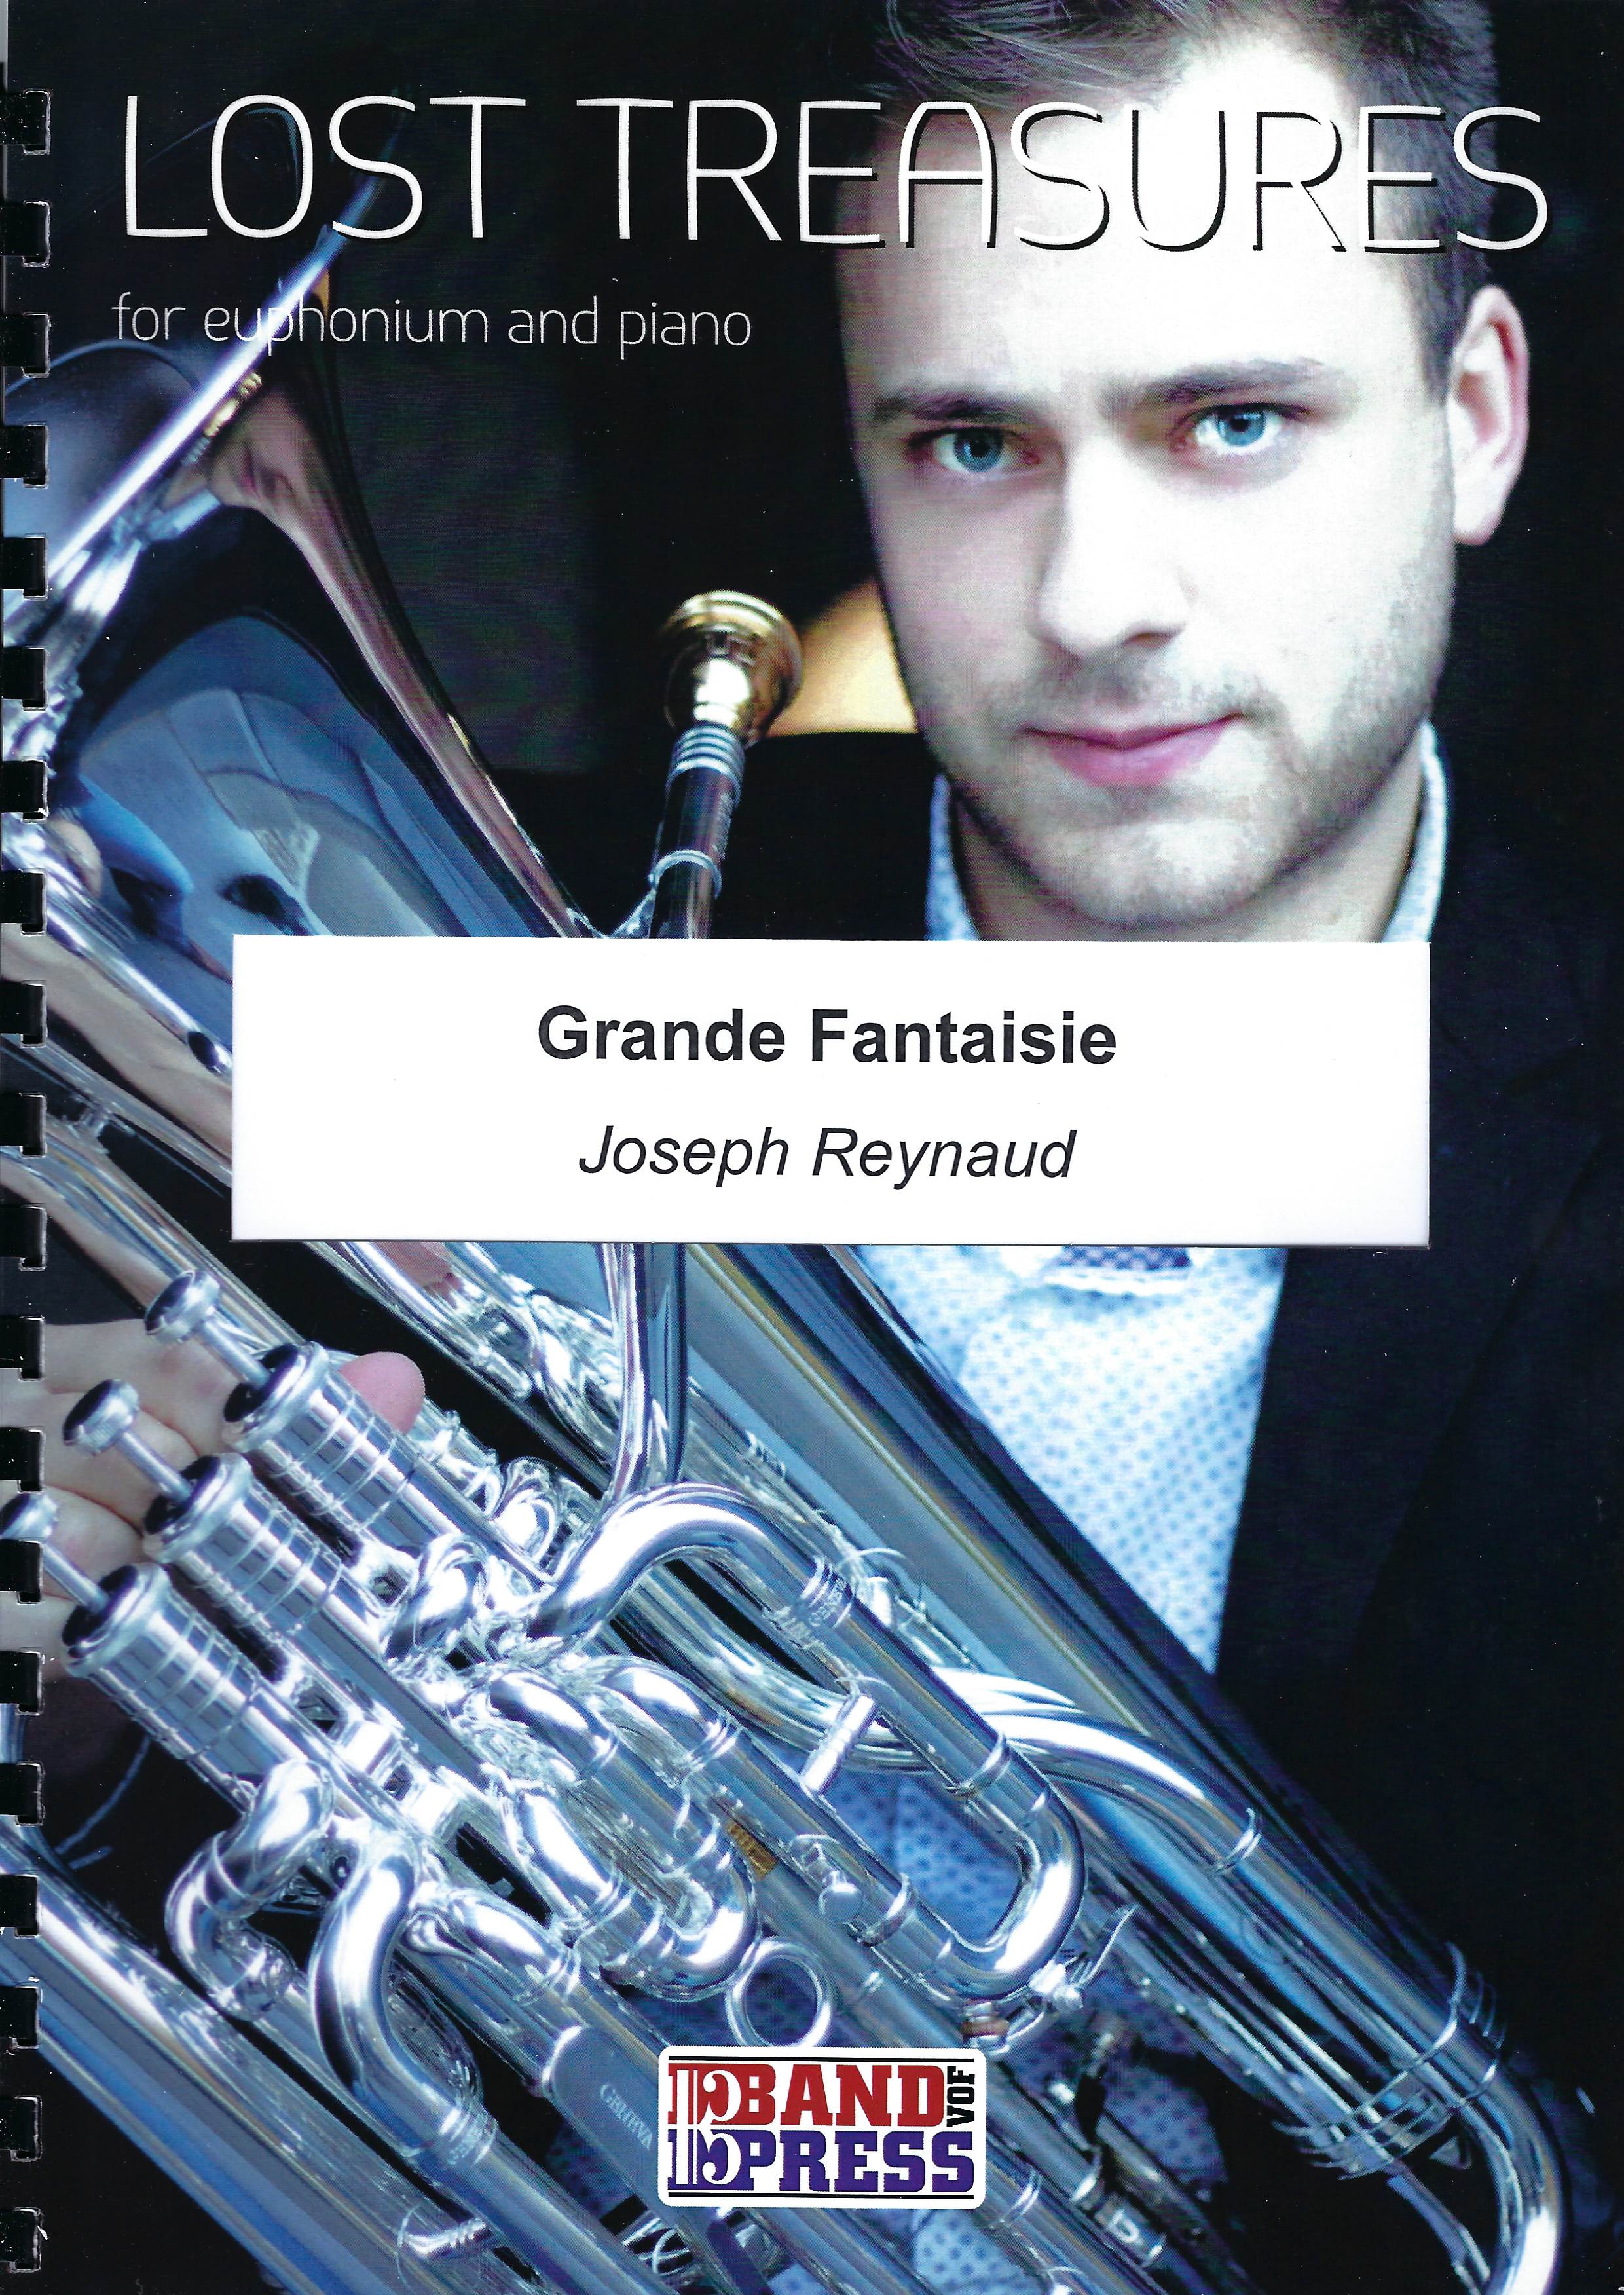 Grande Fantasie - Joseph Reynaud - Euph and Piano (Lost Treasures Series)